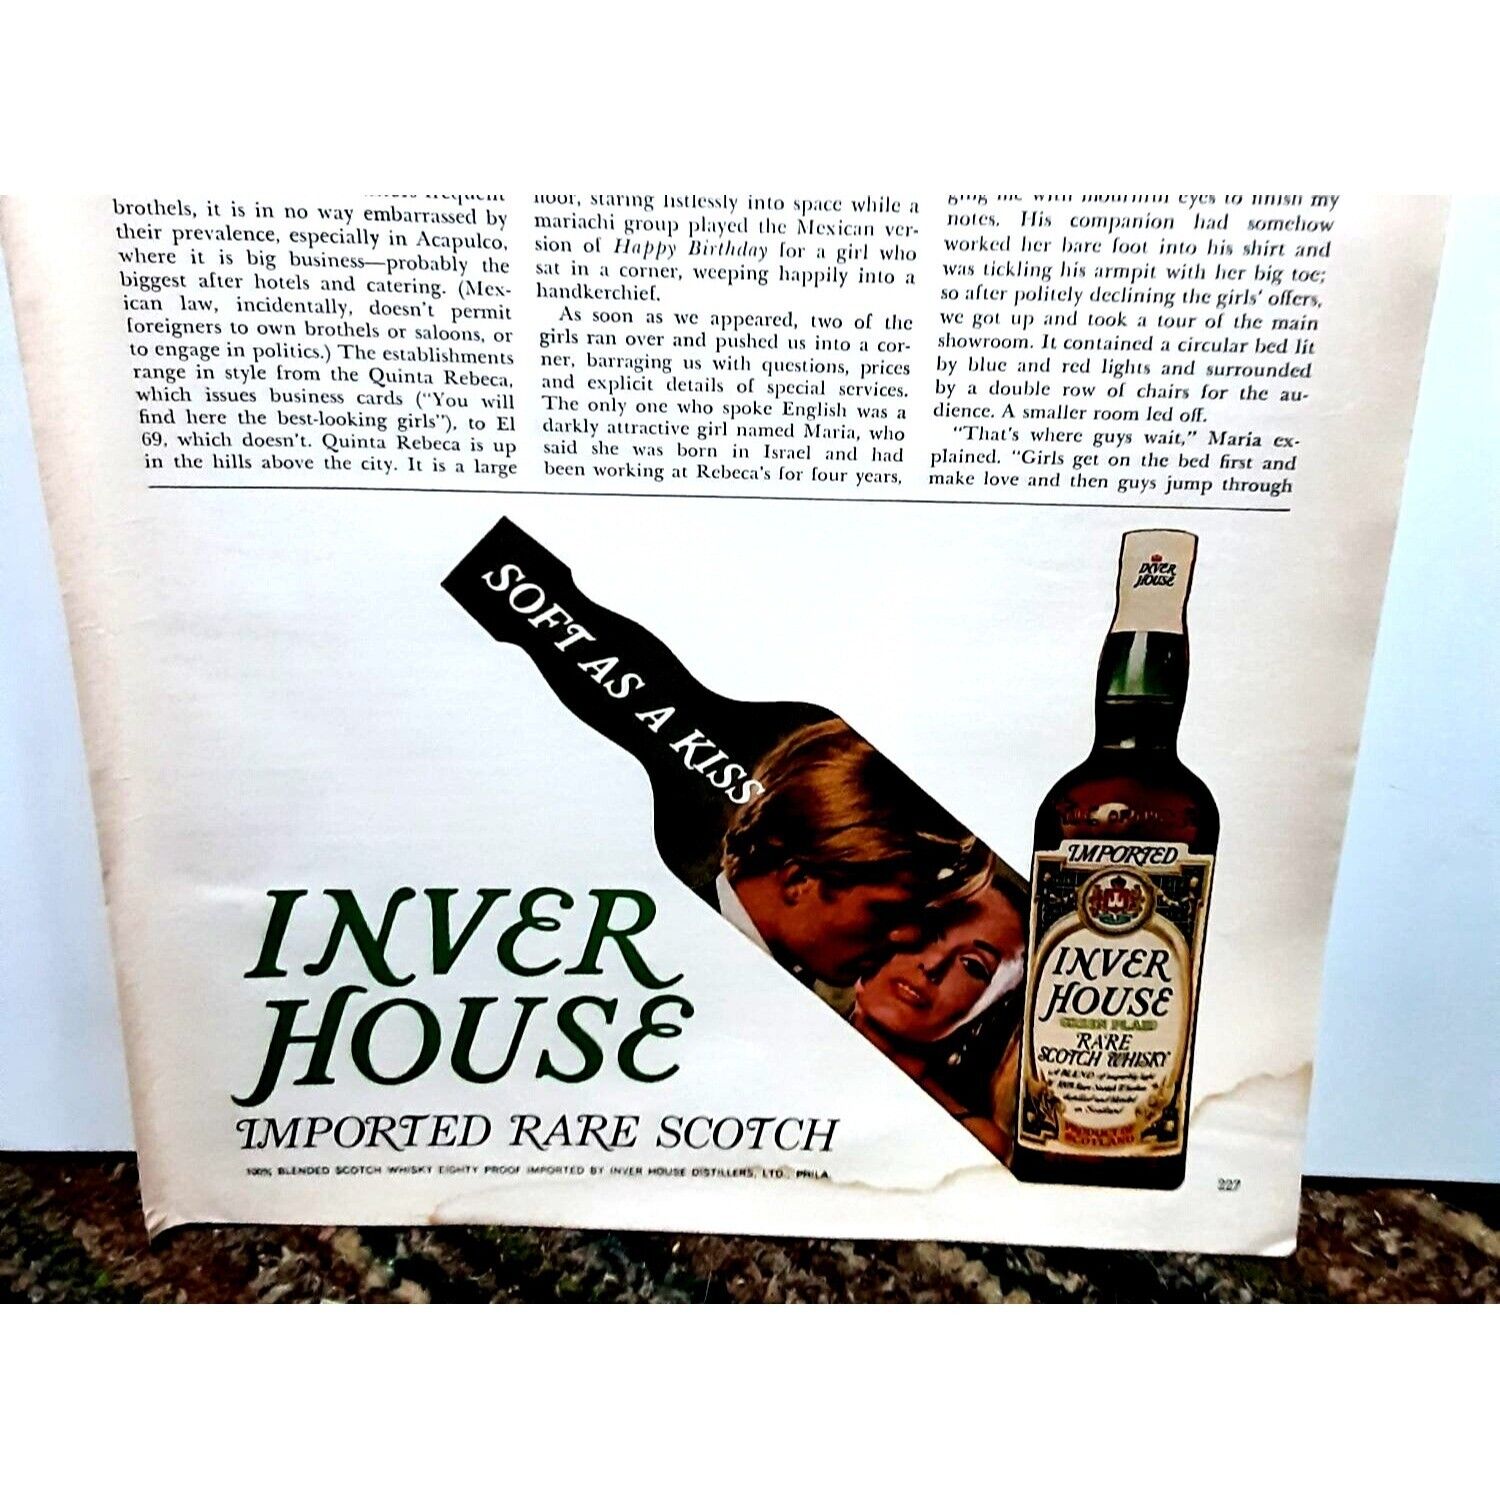 1968 Inver House Scotch Vintage Print Ad Original